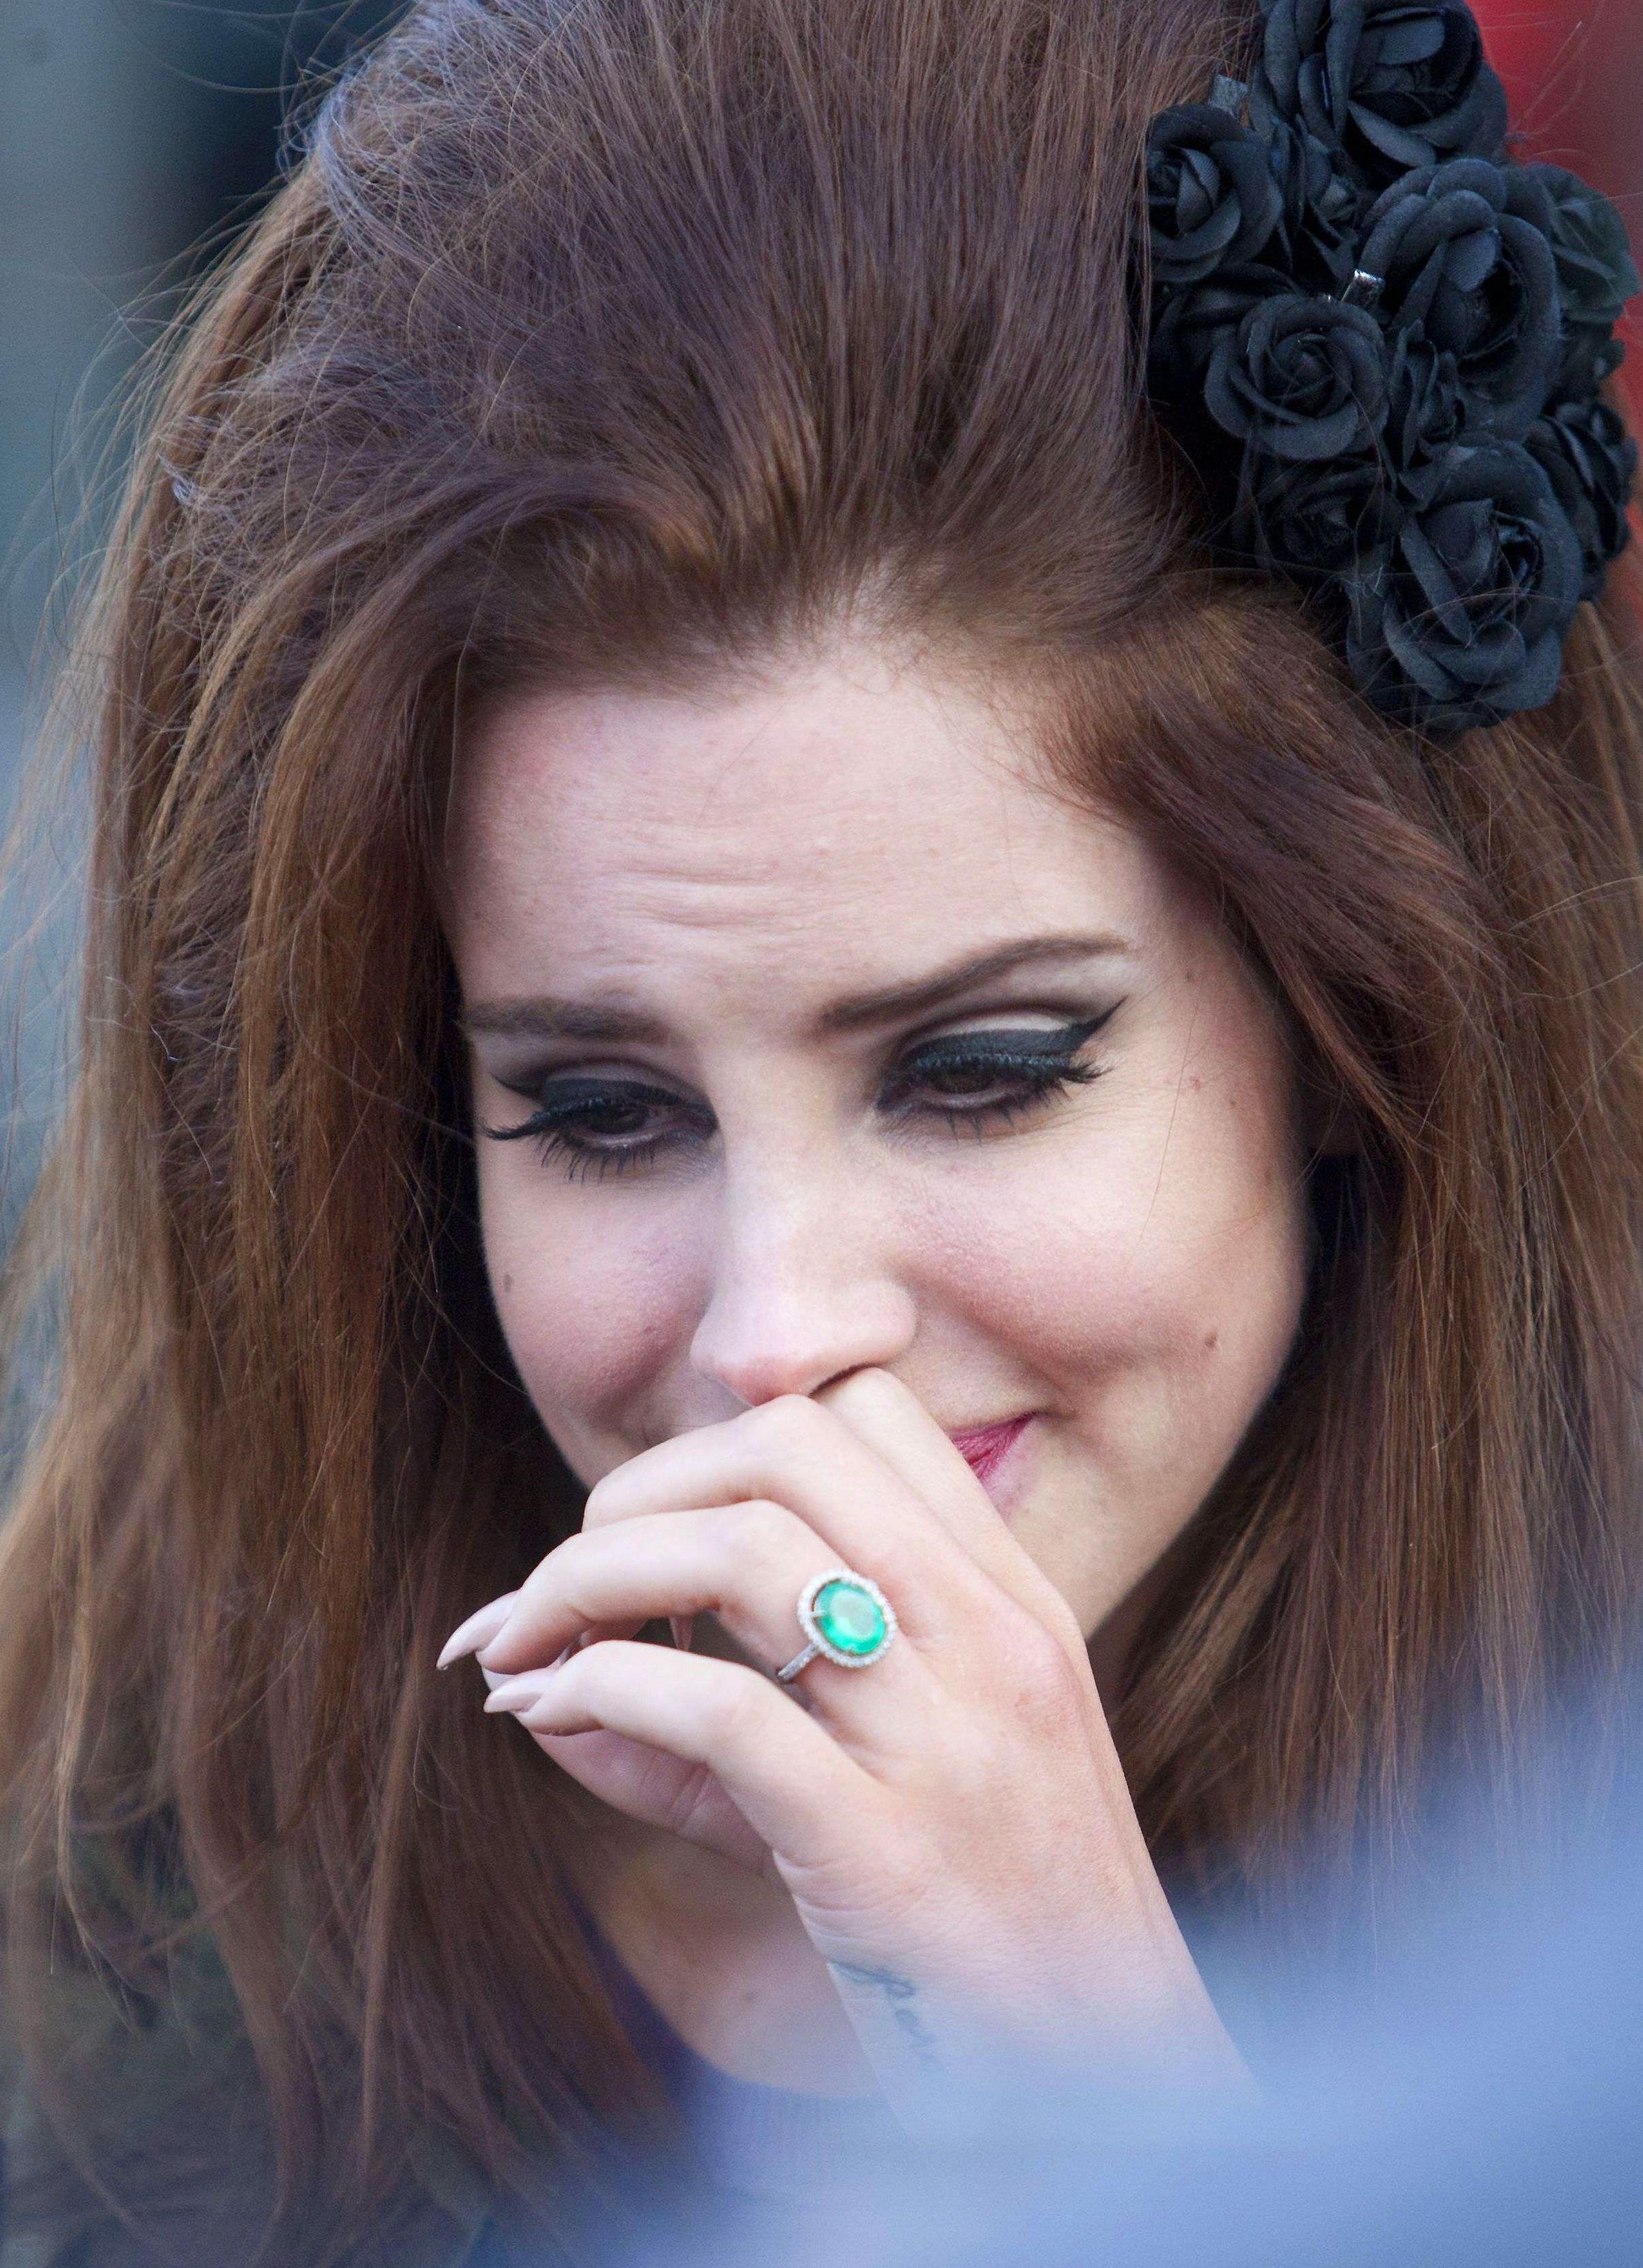 La nouvelle coiffure de Lana Del Rey : on en dit quoi ?